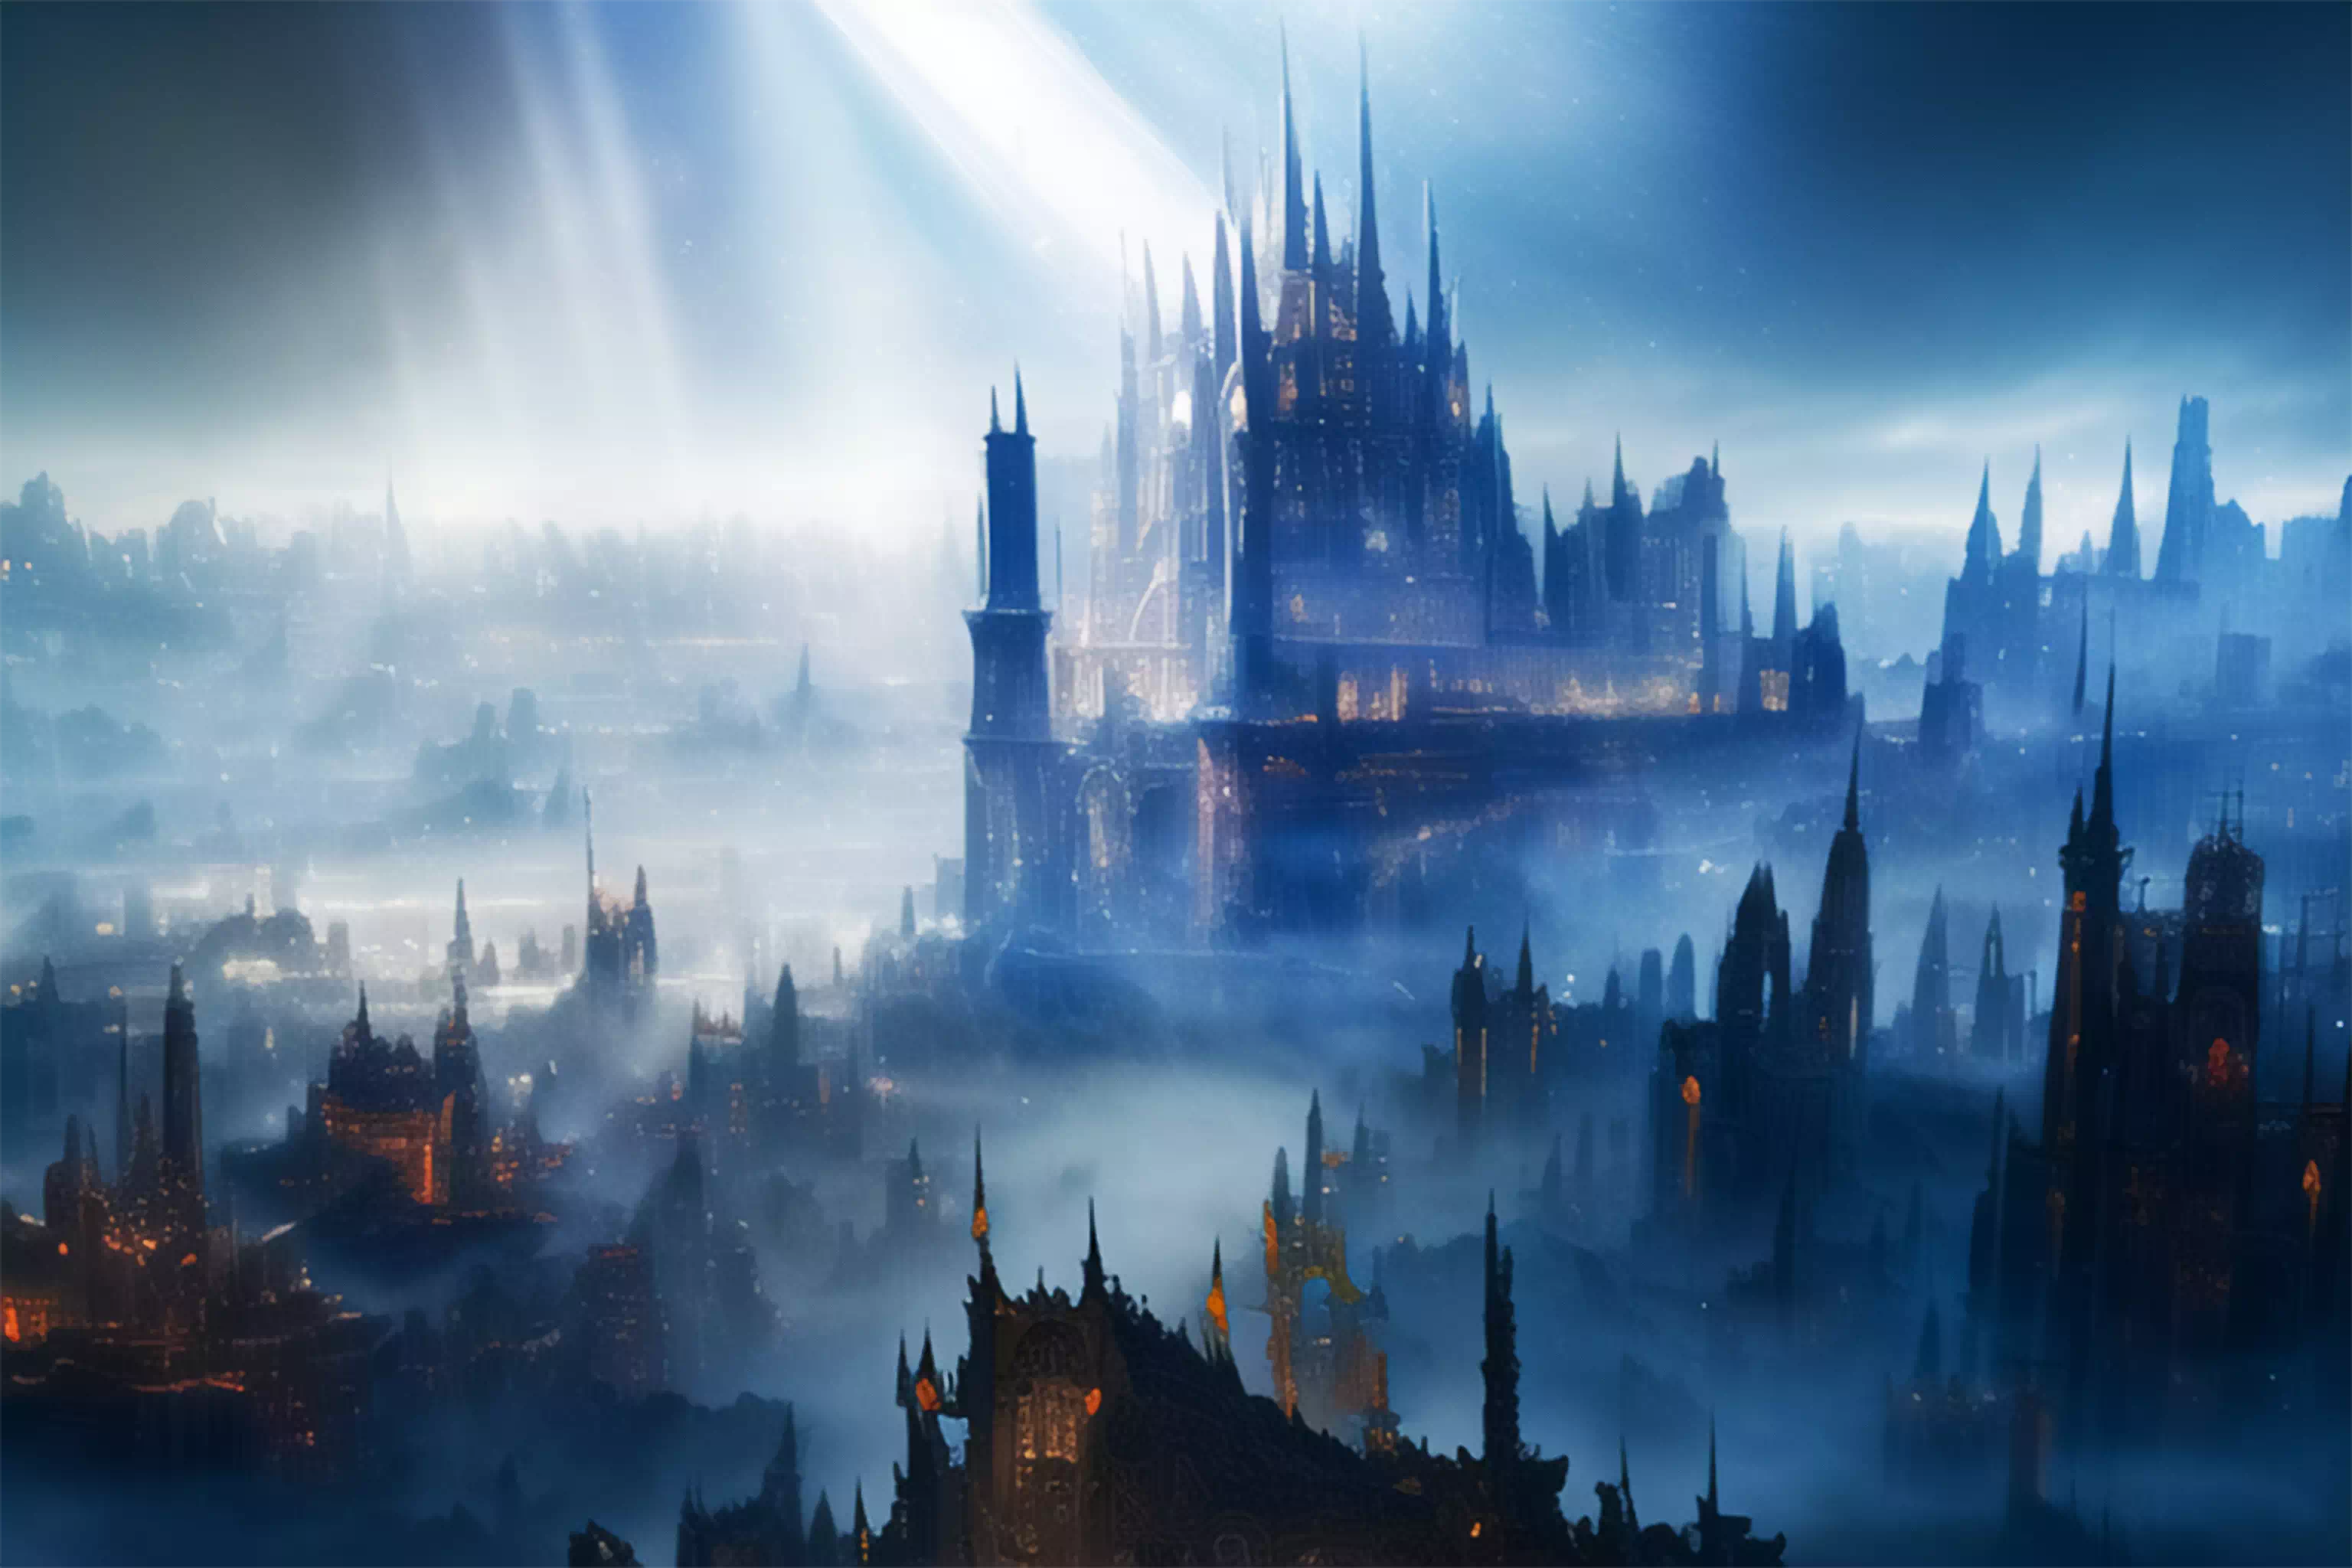 A fantasy gothic city